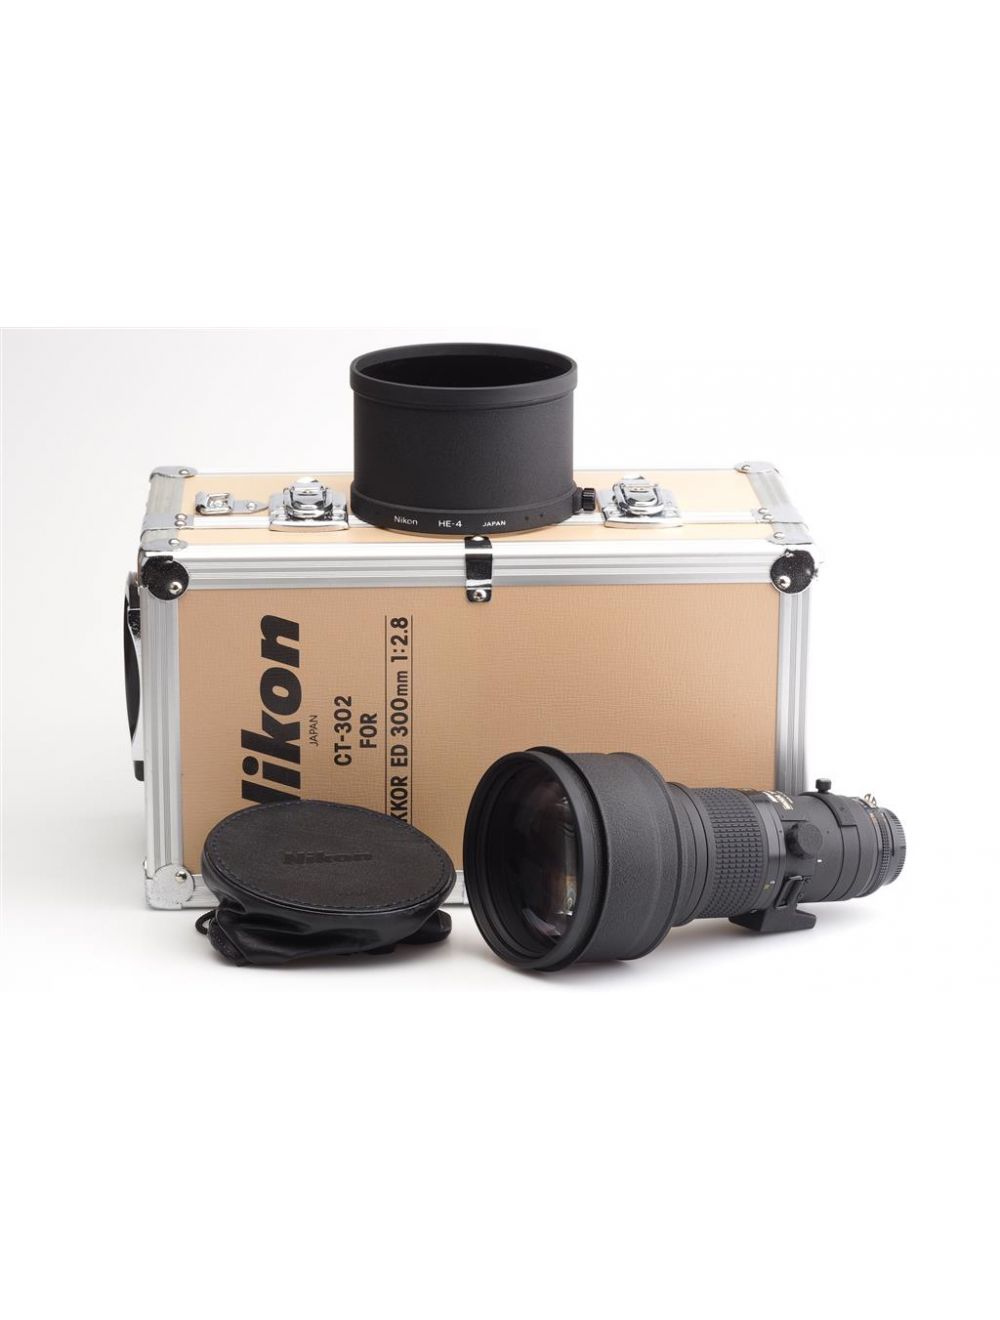 Nikon AI/S 2.8/300mm Nikkor ED w. Trunk Case #627262